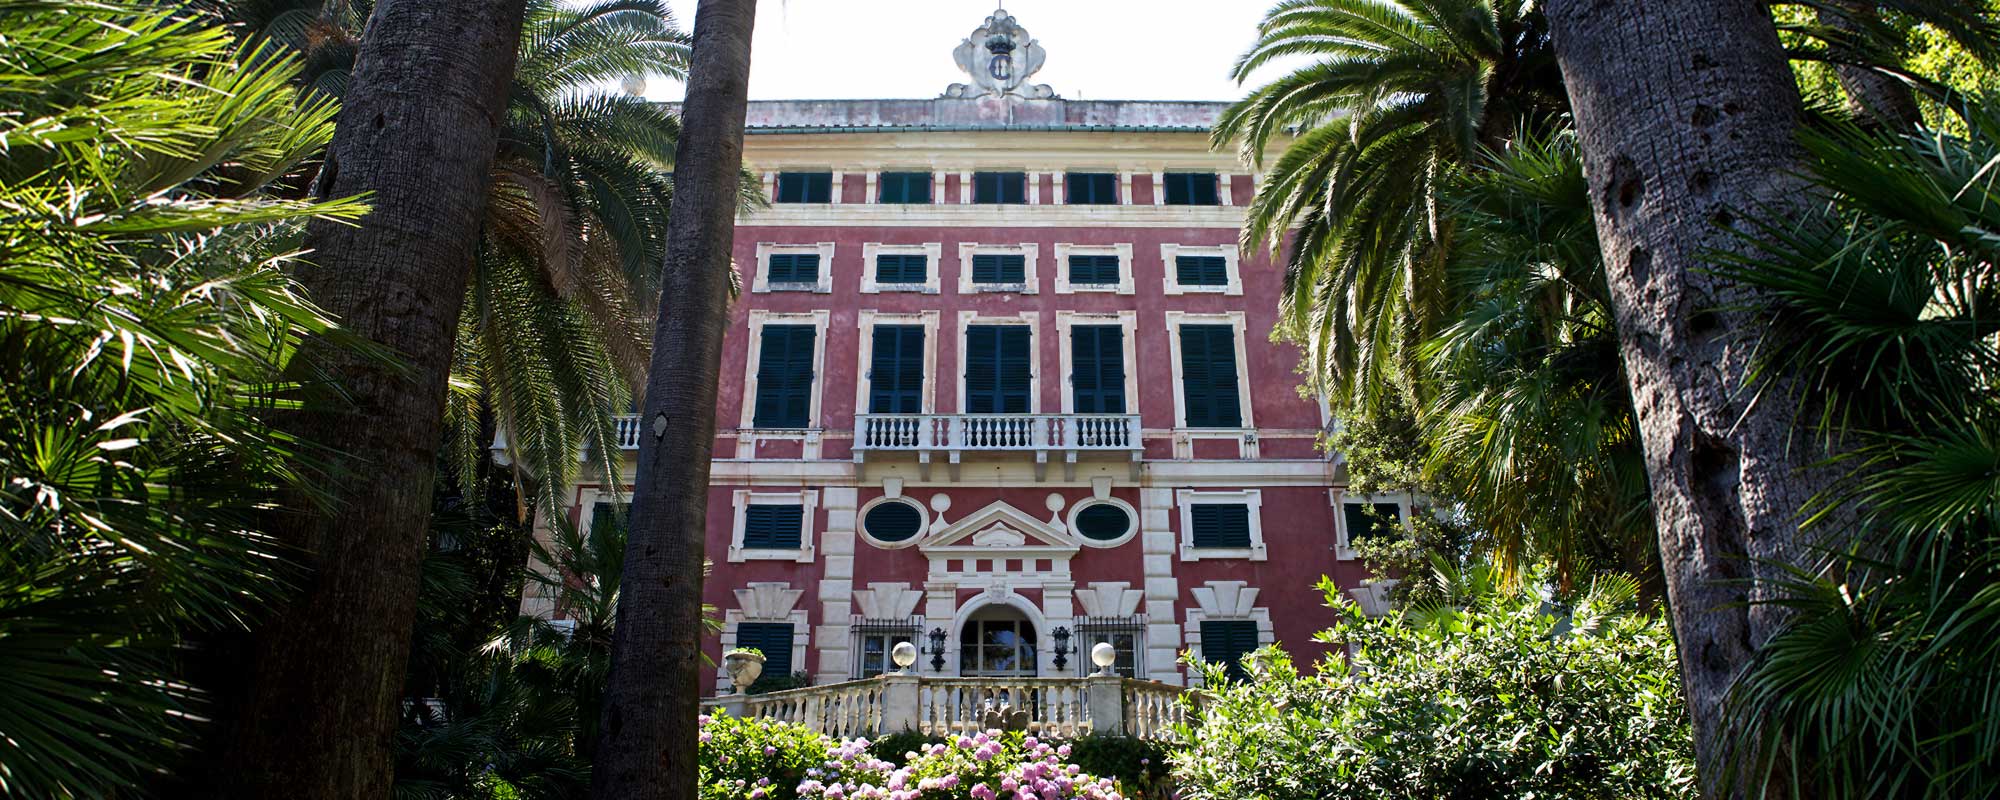 Villa Durazzo Italian Riviera vedding